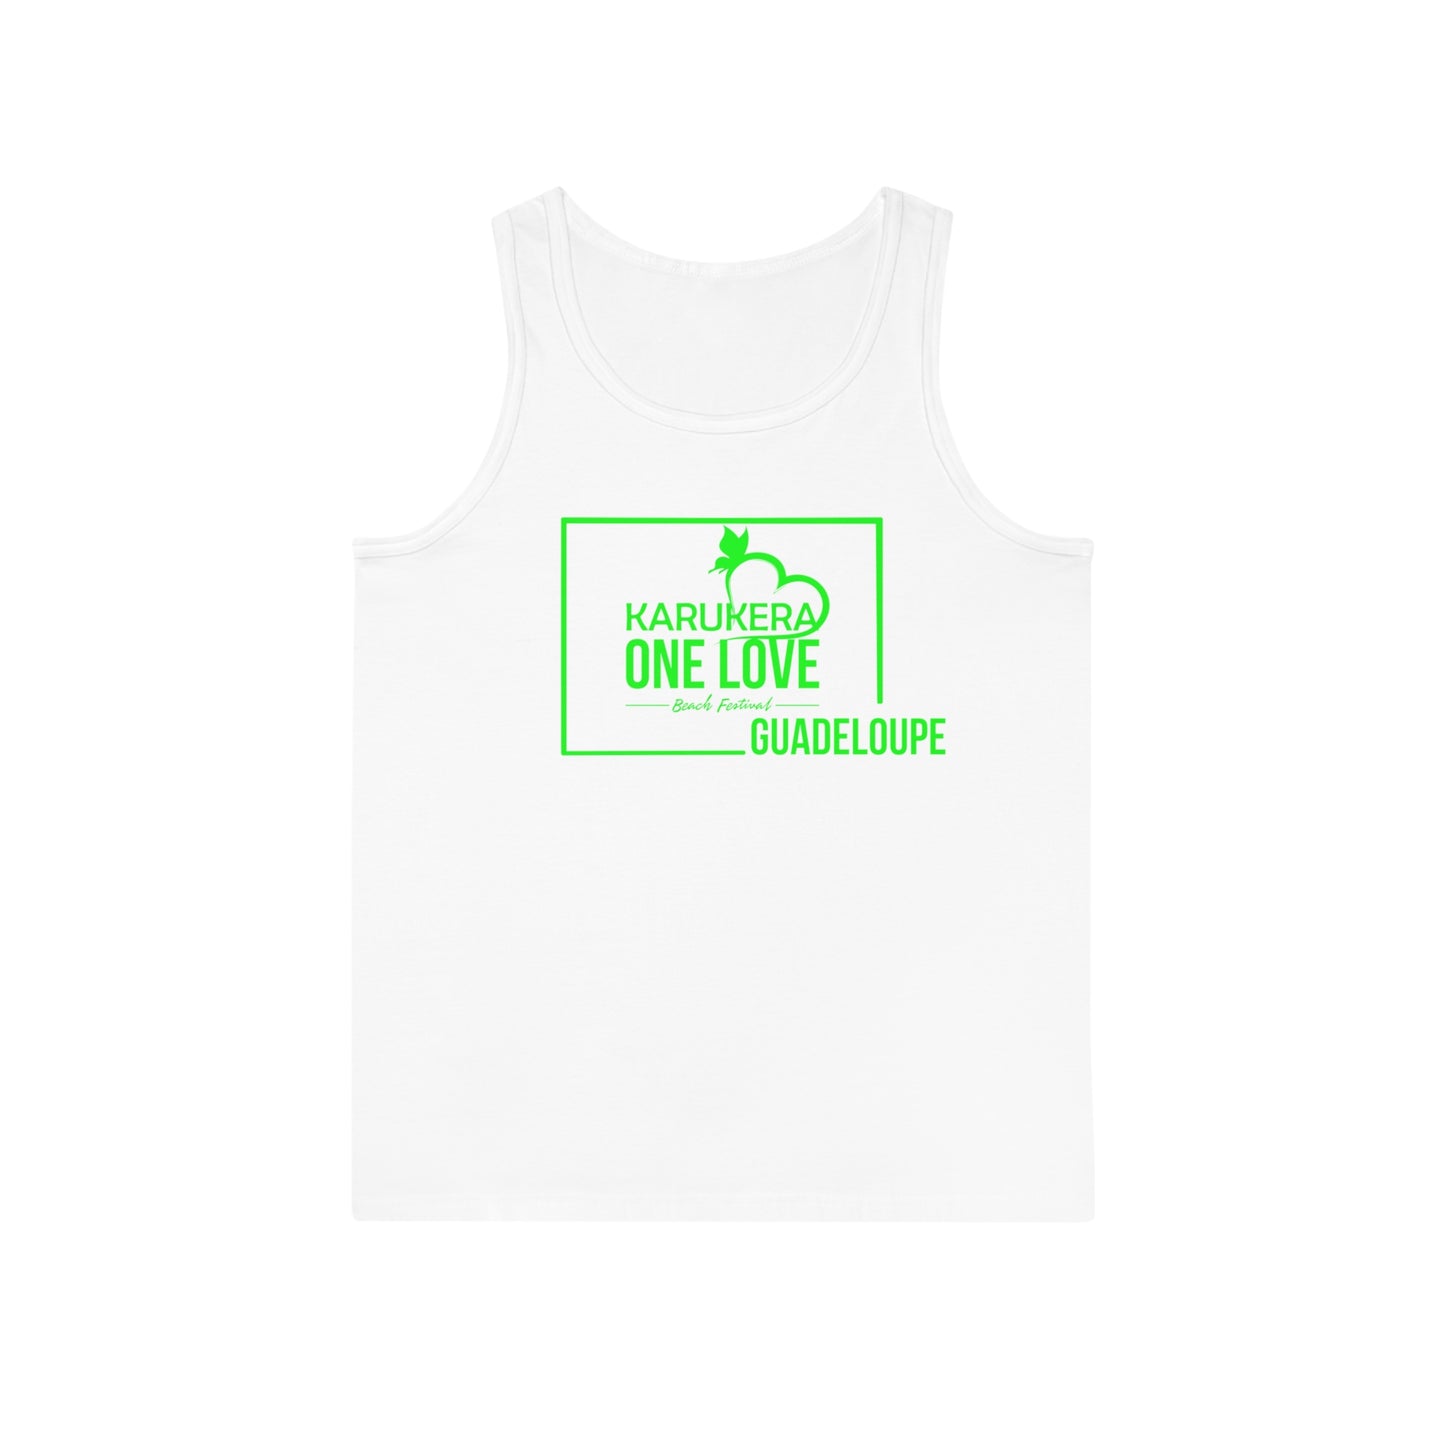 Kerukera One Love Guadeloupe Unisex Softstyle™ Tank Top (green)